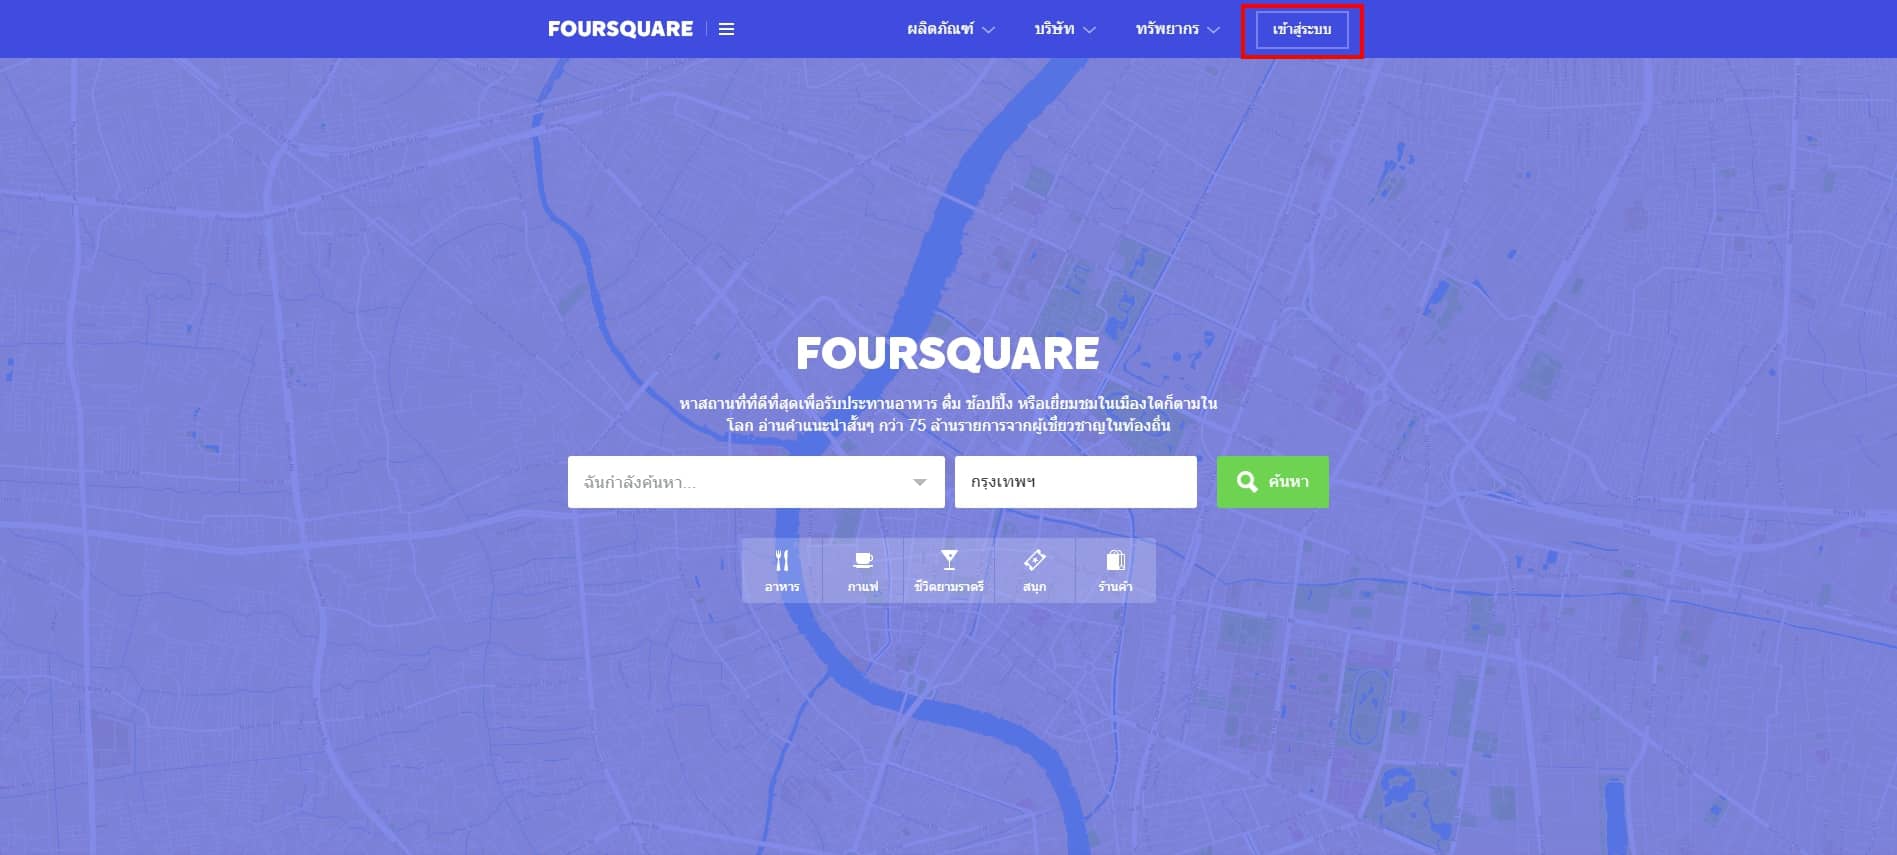 8 วิธีสร้างโลเคชั่นร้านค้าใน Line ด้วย Foursquare